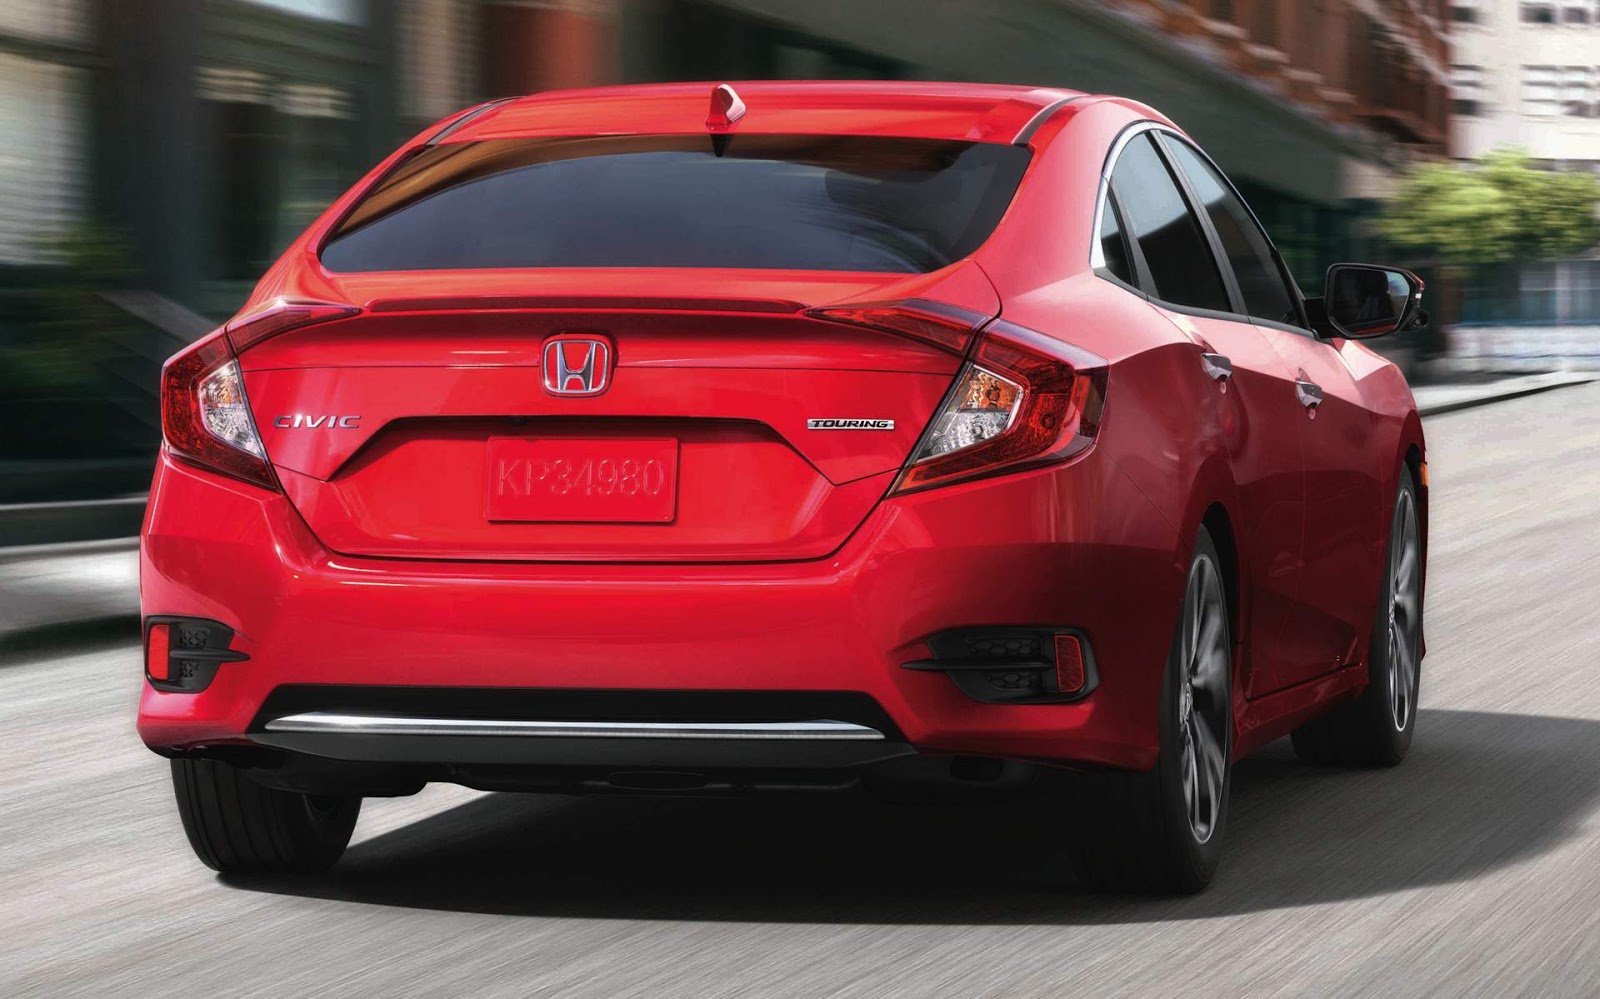 Honda Civic 2019 tem facelift nos EUA - fotos e detalhes